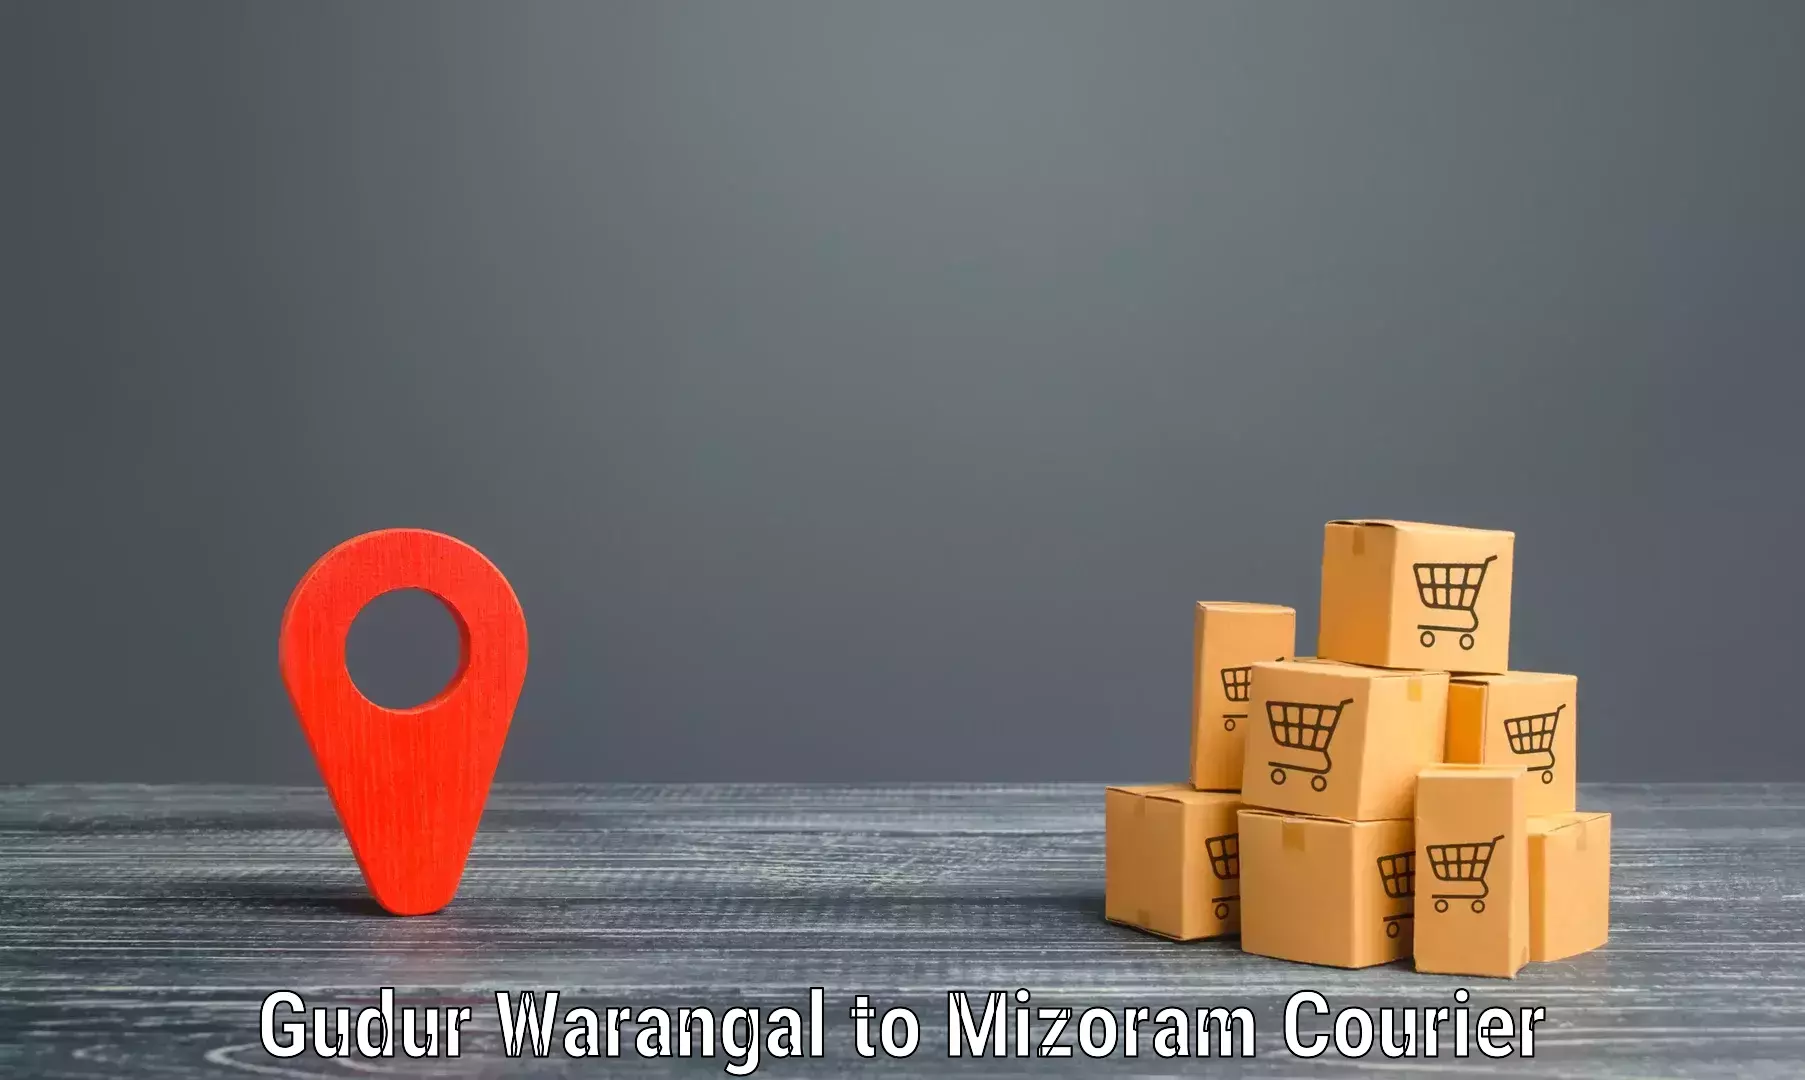 Express logistics service Gudur Warangal to Mizoram